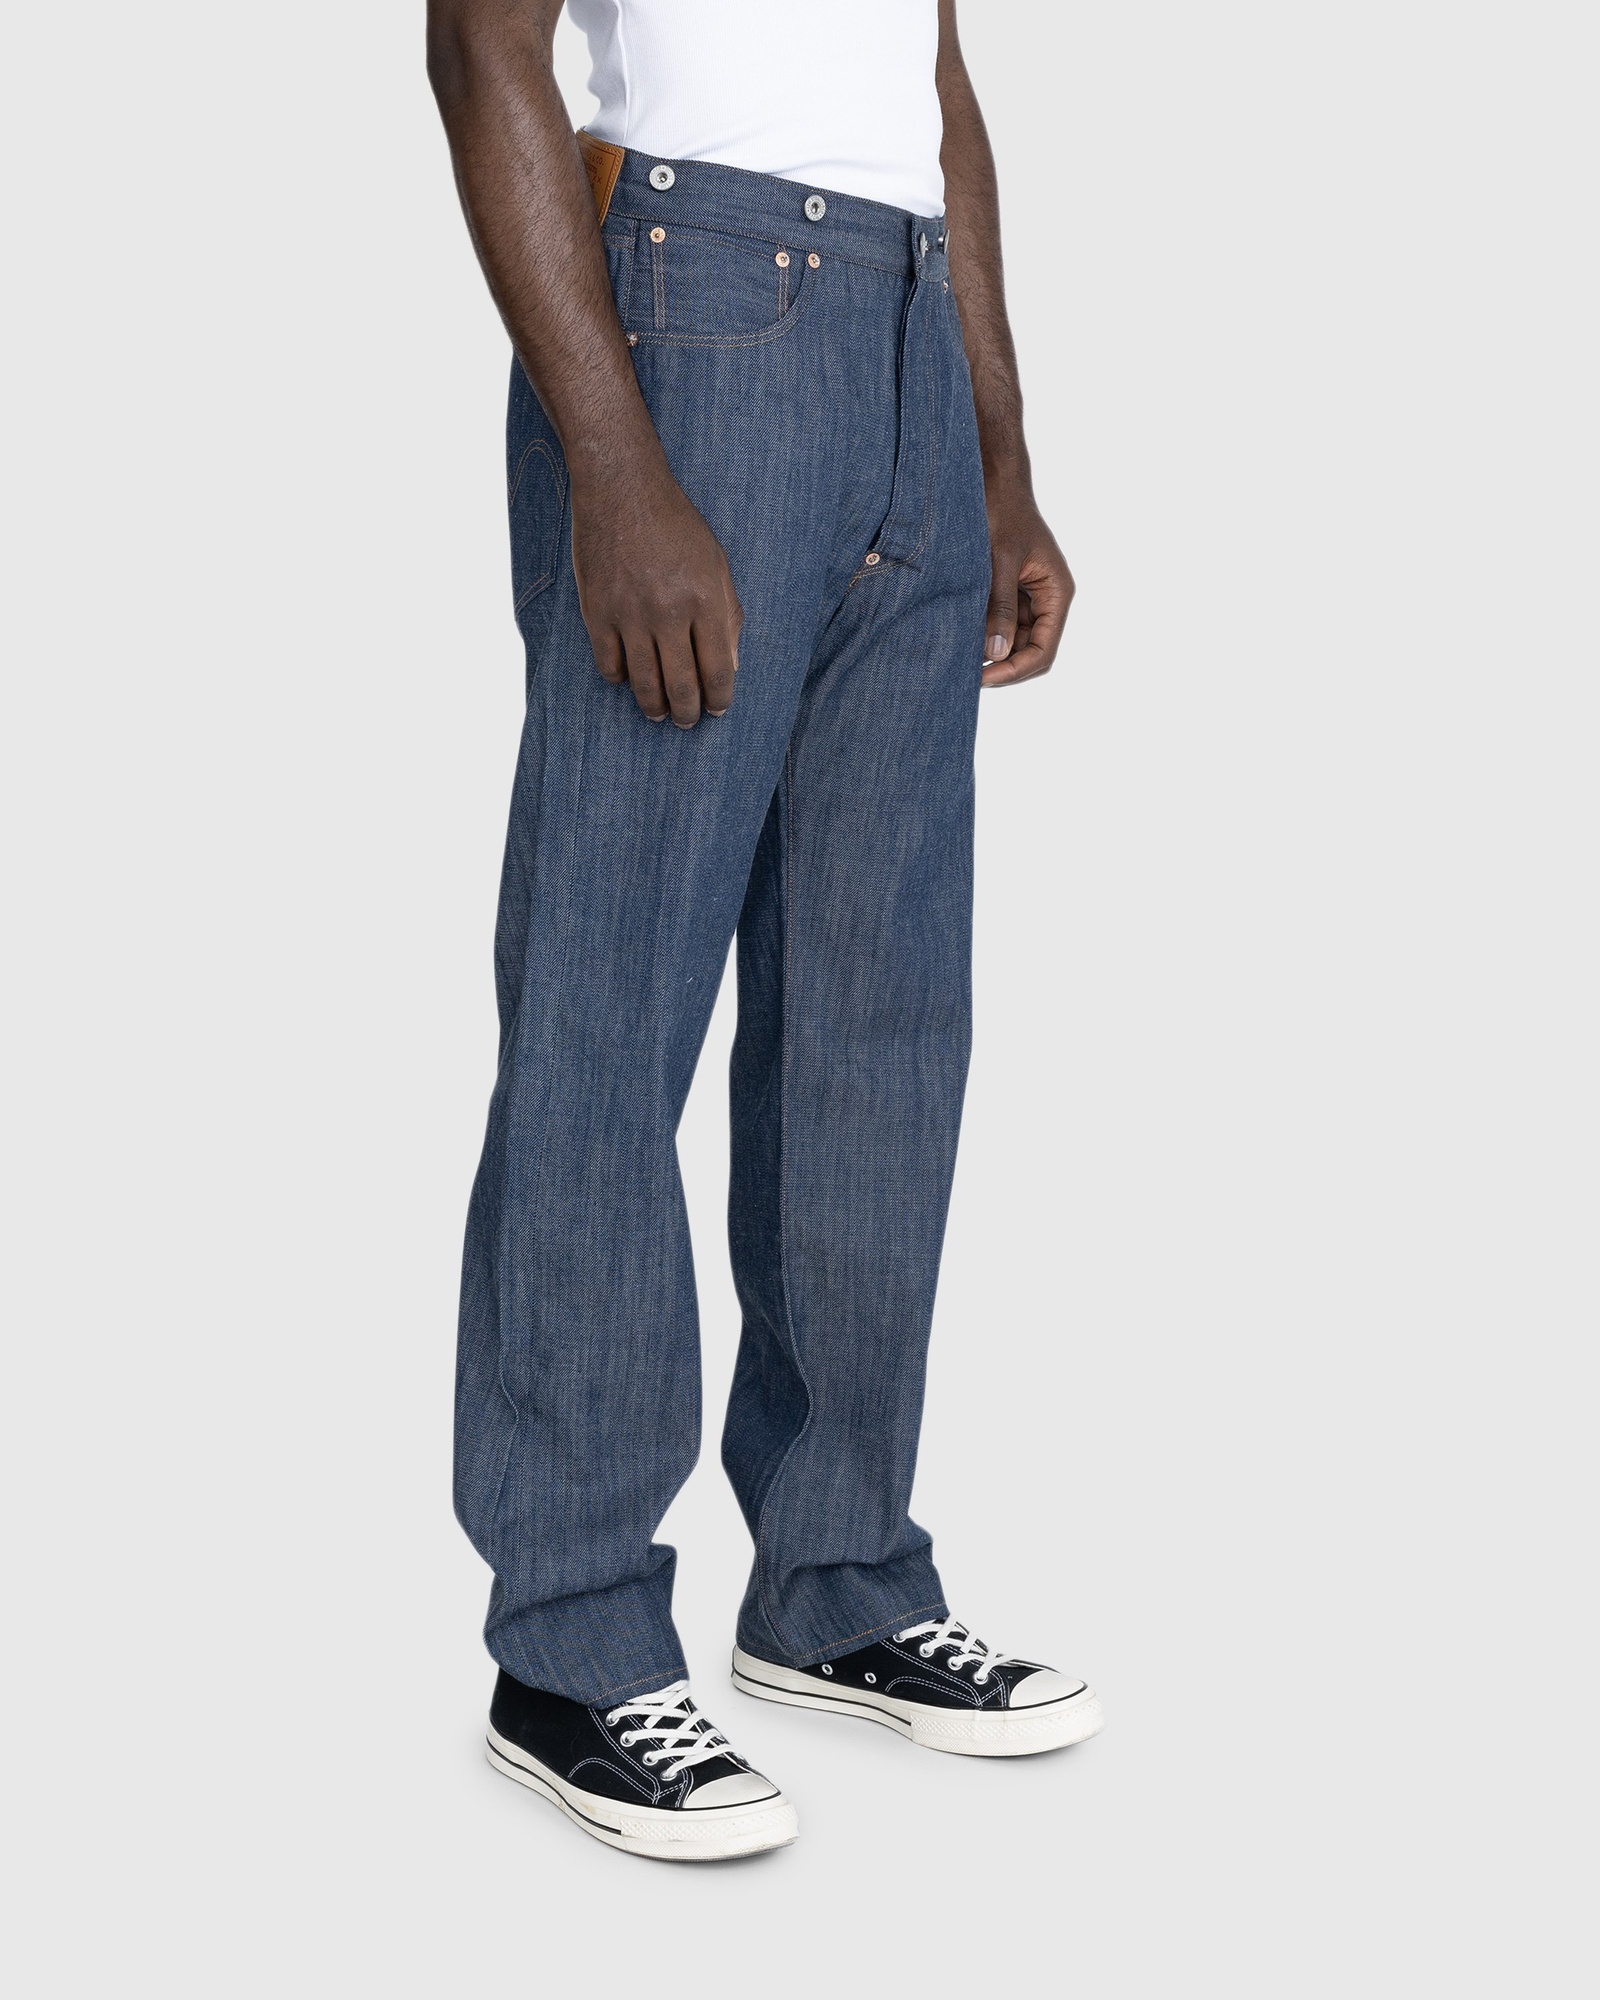 Levi's – 1901 501 Jeans Dark Indigo Flat Finish | Highsnobiety Shop